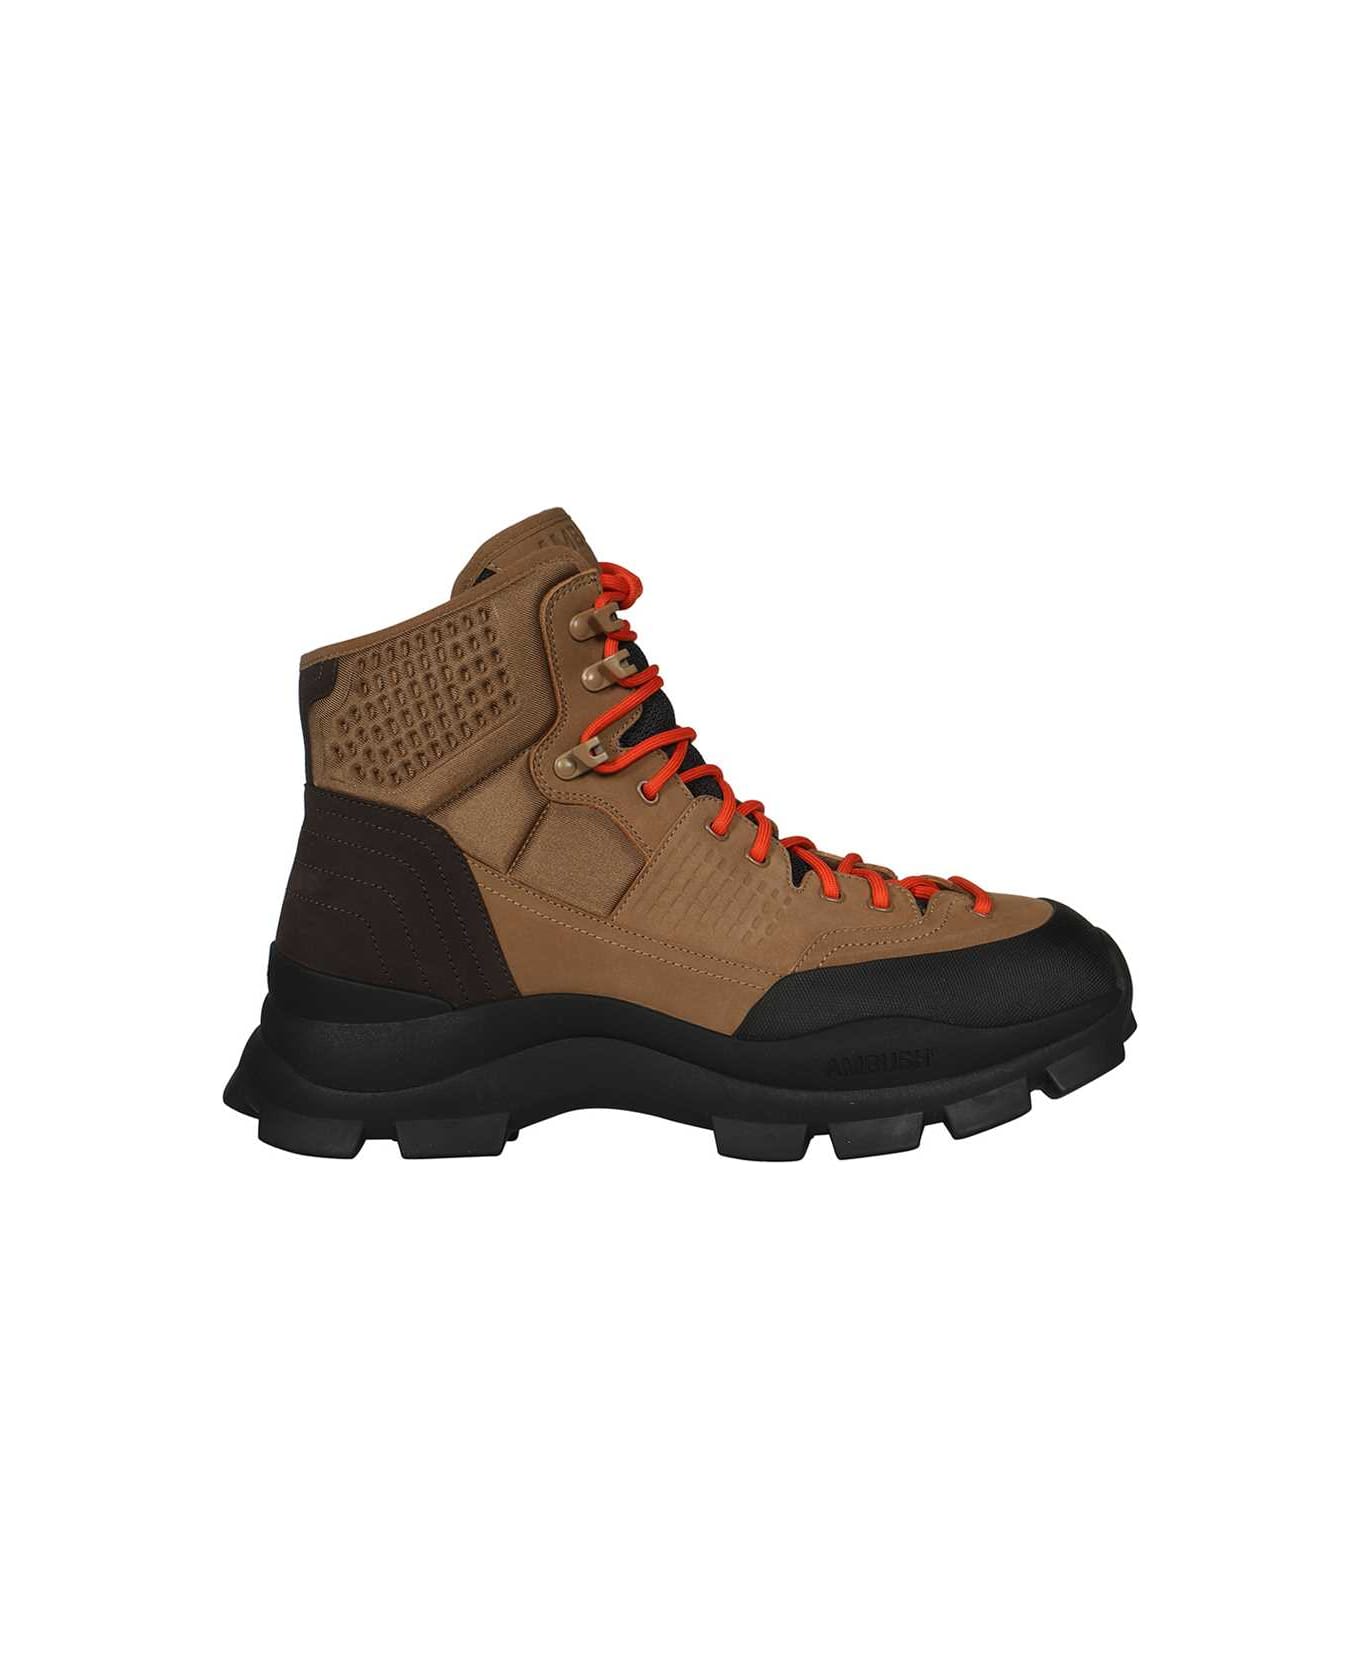 AMBUSH Hiking Boots - brown ブーツ